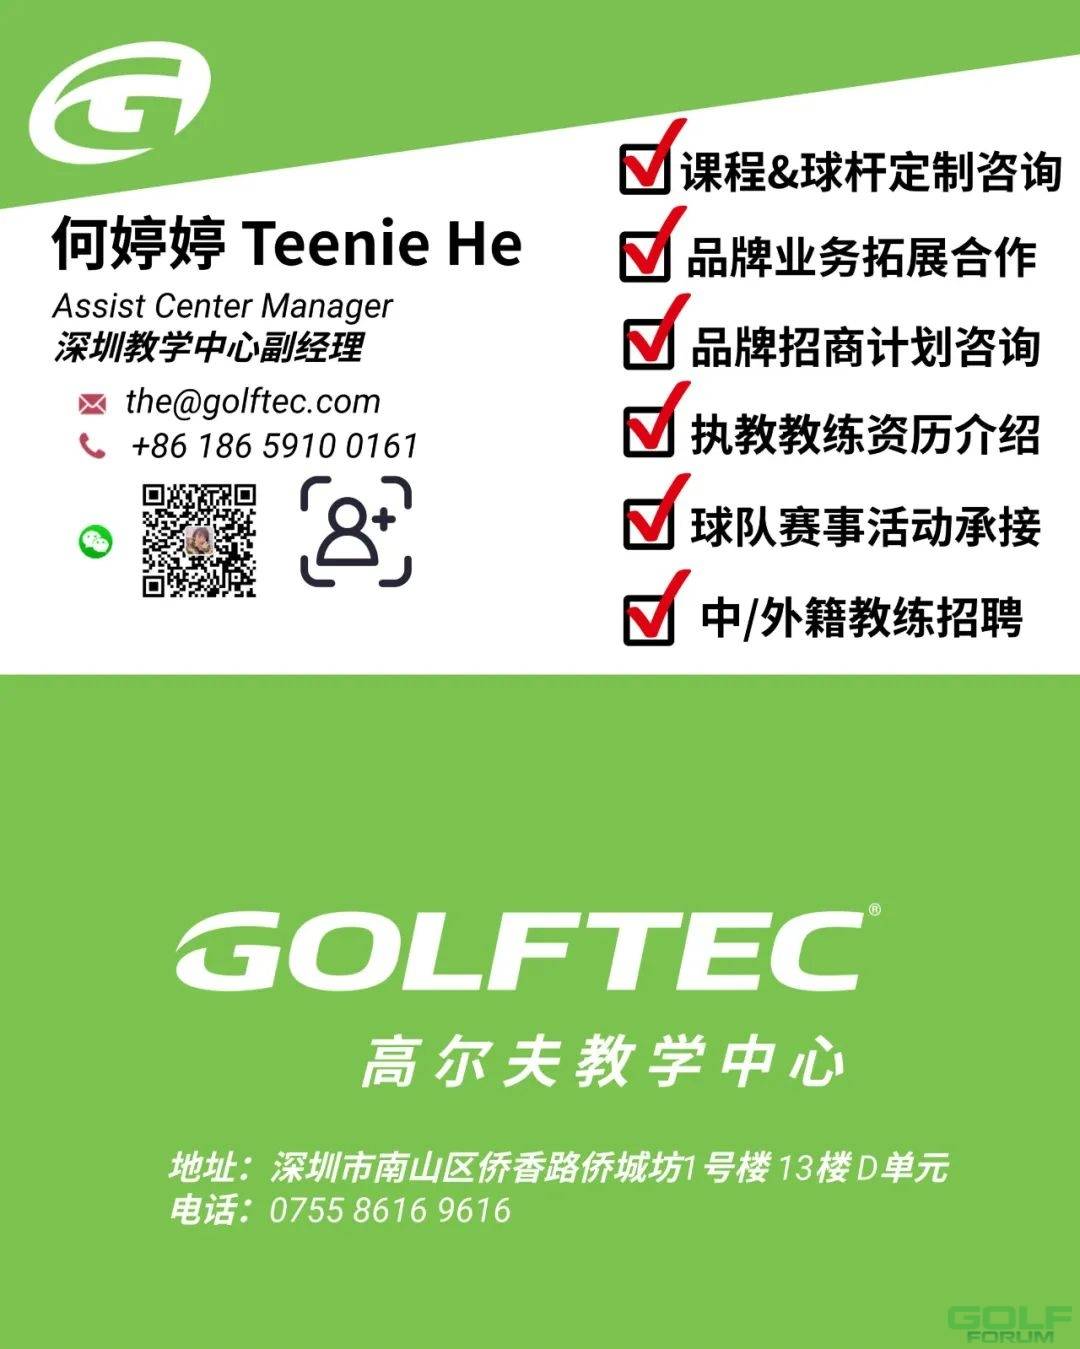 业余世界第一RoseZhang在GOLFTEC开启她的盛放高尔夫旅程-GOLFTEC见证&助力 ...